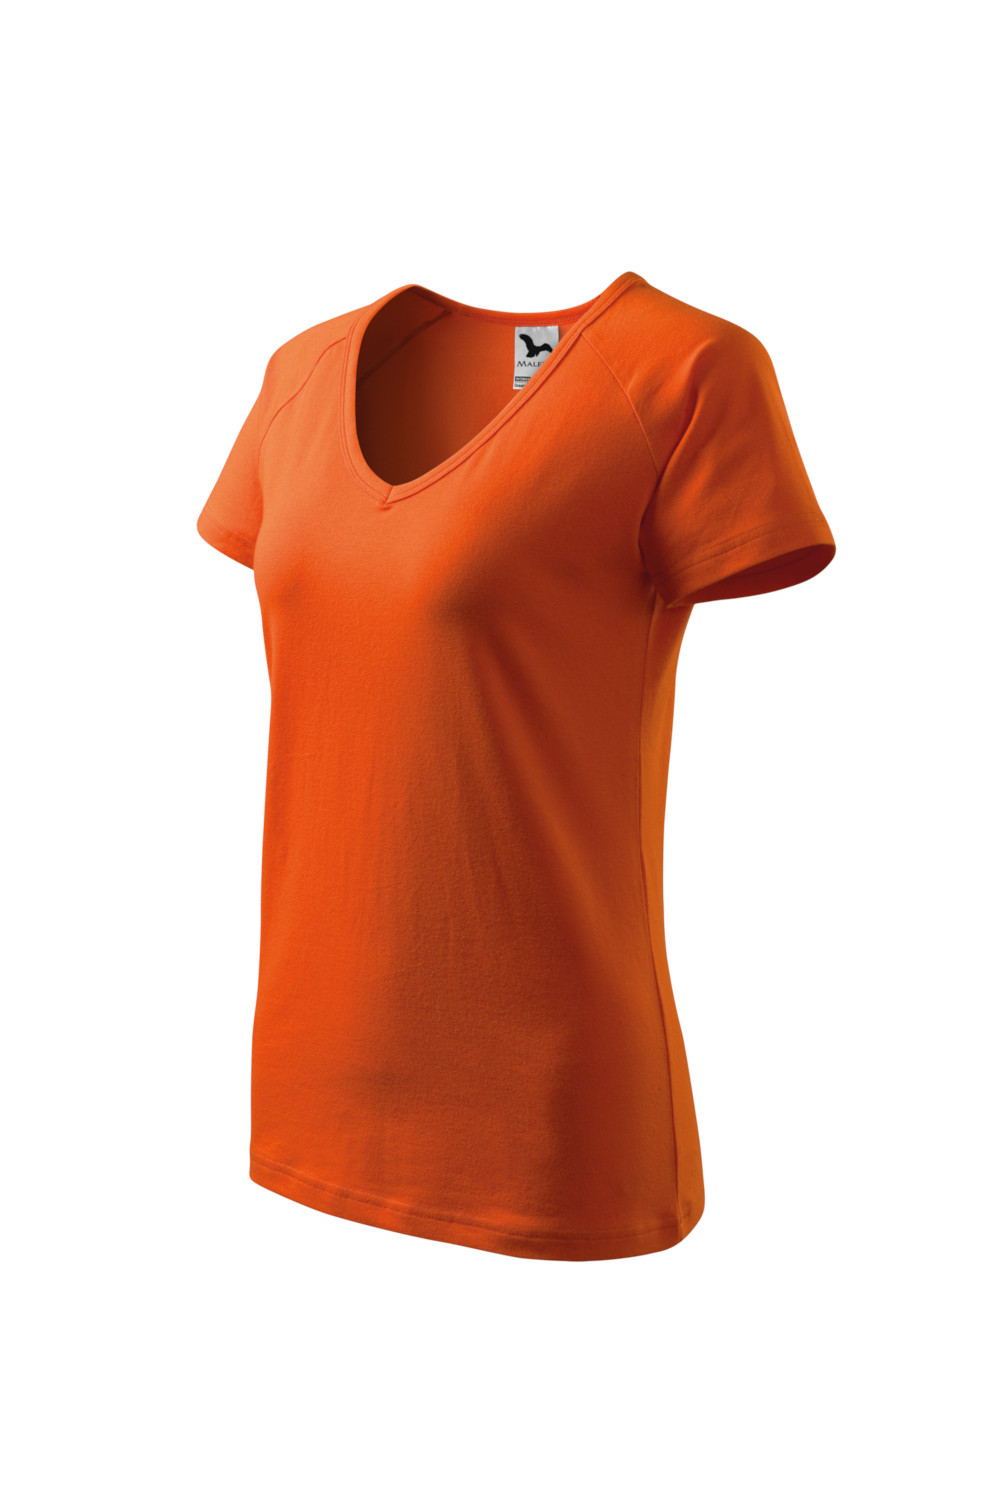 Koszulka damska 95% bawełna 5% elastan DREAM 128 odzież pomarańczowy